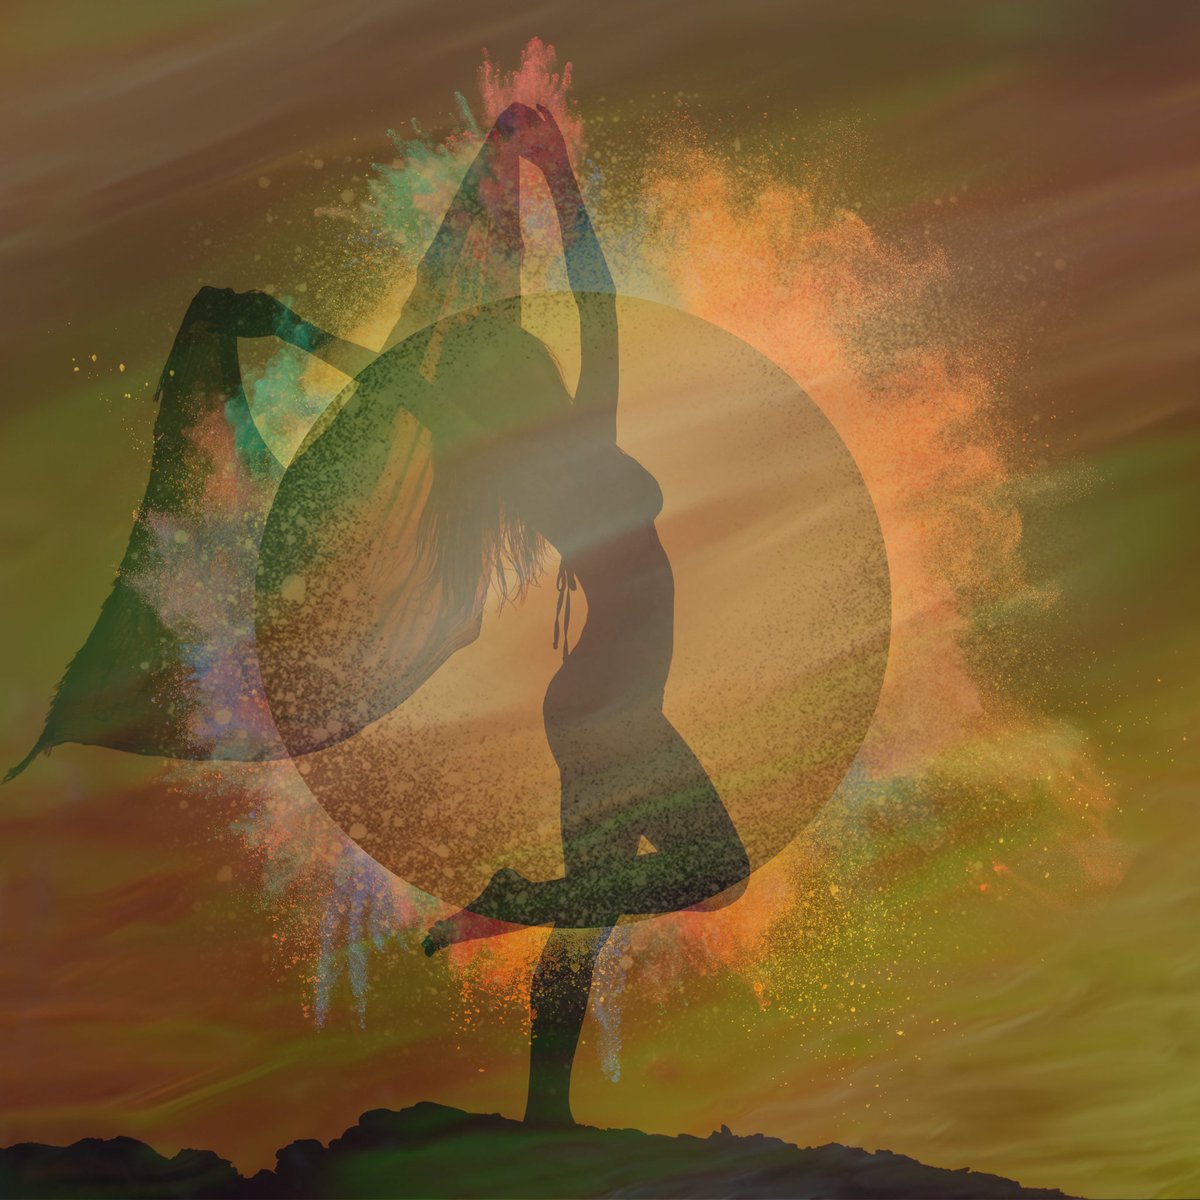 Fantasy Art: Dancing With The Golden Sun Canvas Print zazzle.co.uk/fantasy_art_da… via @zazzle #artforsale #BuyIntoArt #boho #bohoart #spiritualart #wallart #wallartforsale #walldecor #bohoaesthetic #Bohemian #goldensun #sunart #beachsunset #sunset #glow #magical #beautifulsun